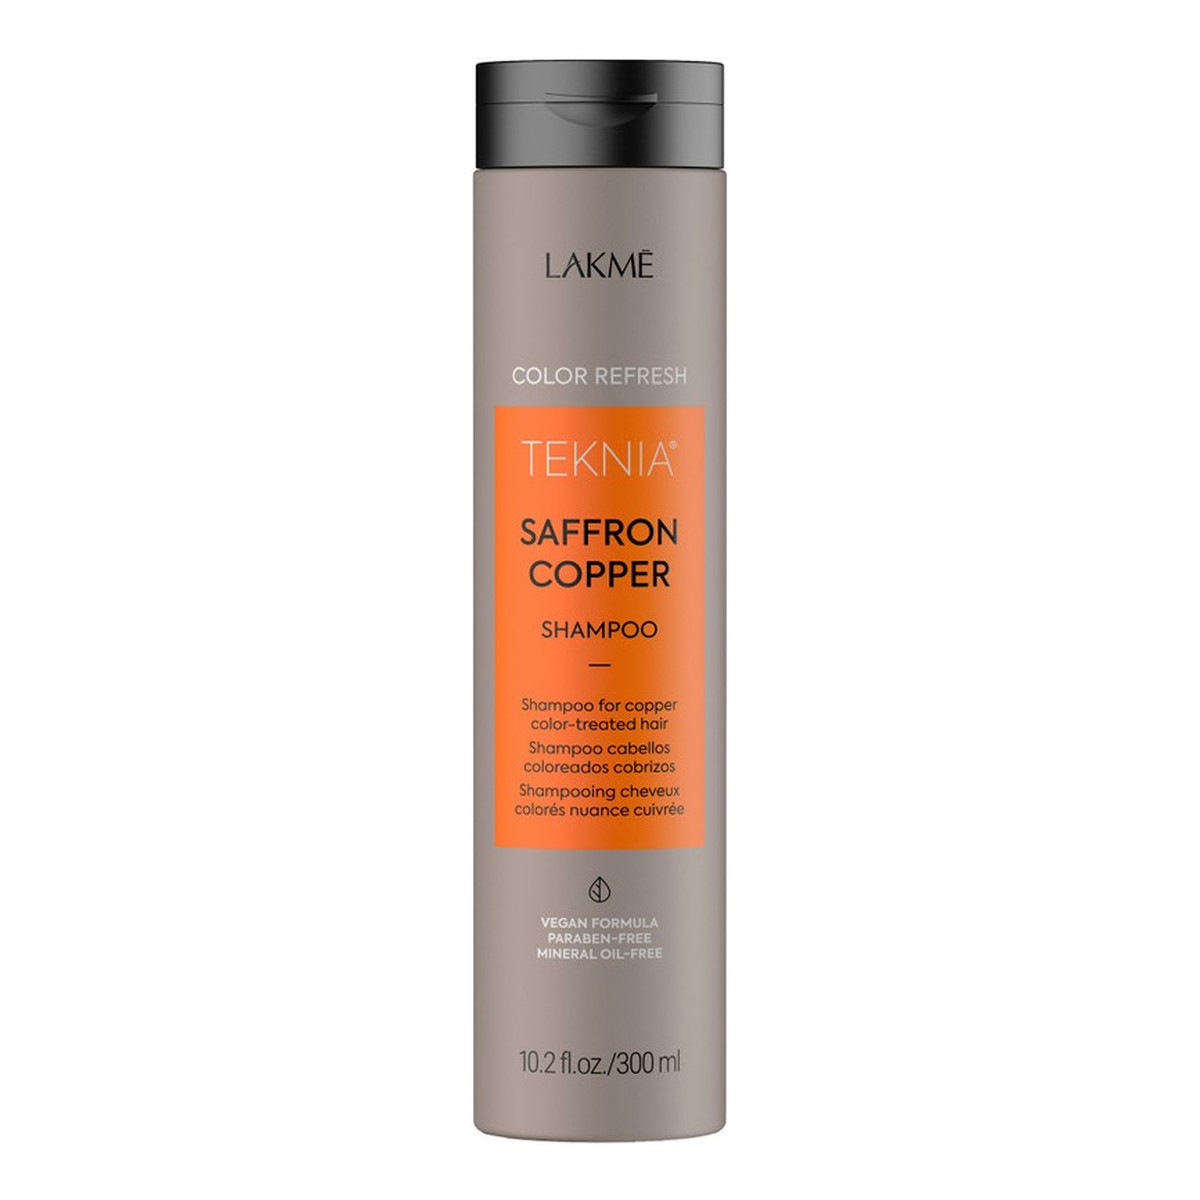 Lakme Teknia saffron copper shampoo refresh szampon odświeżający kolor do włosów miedzianych 300ml